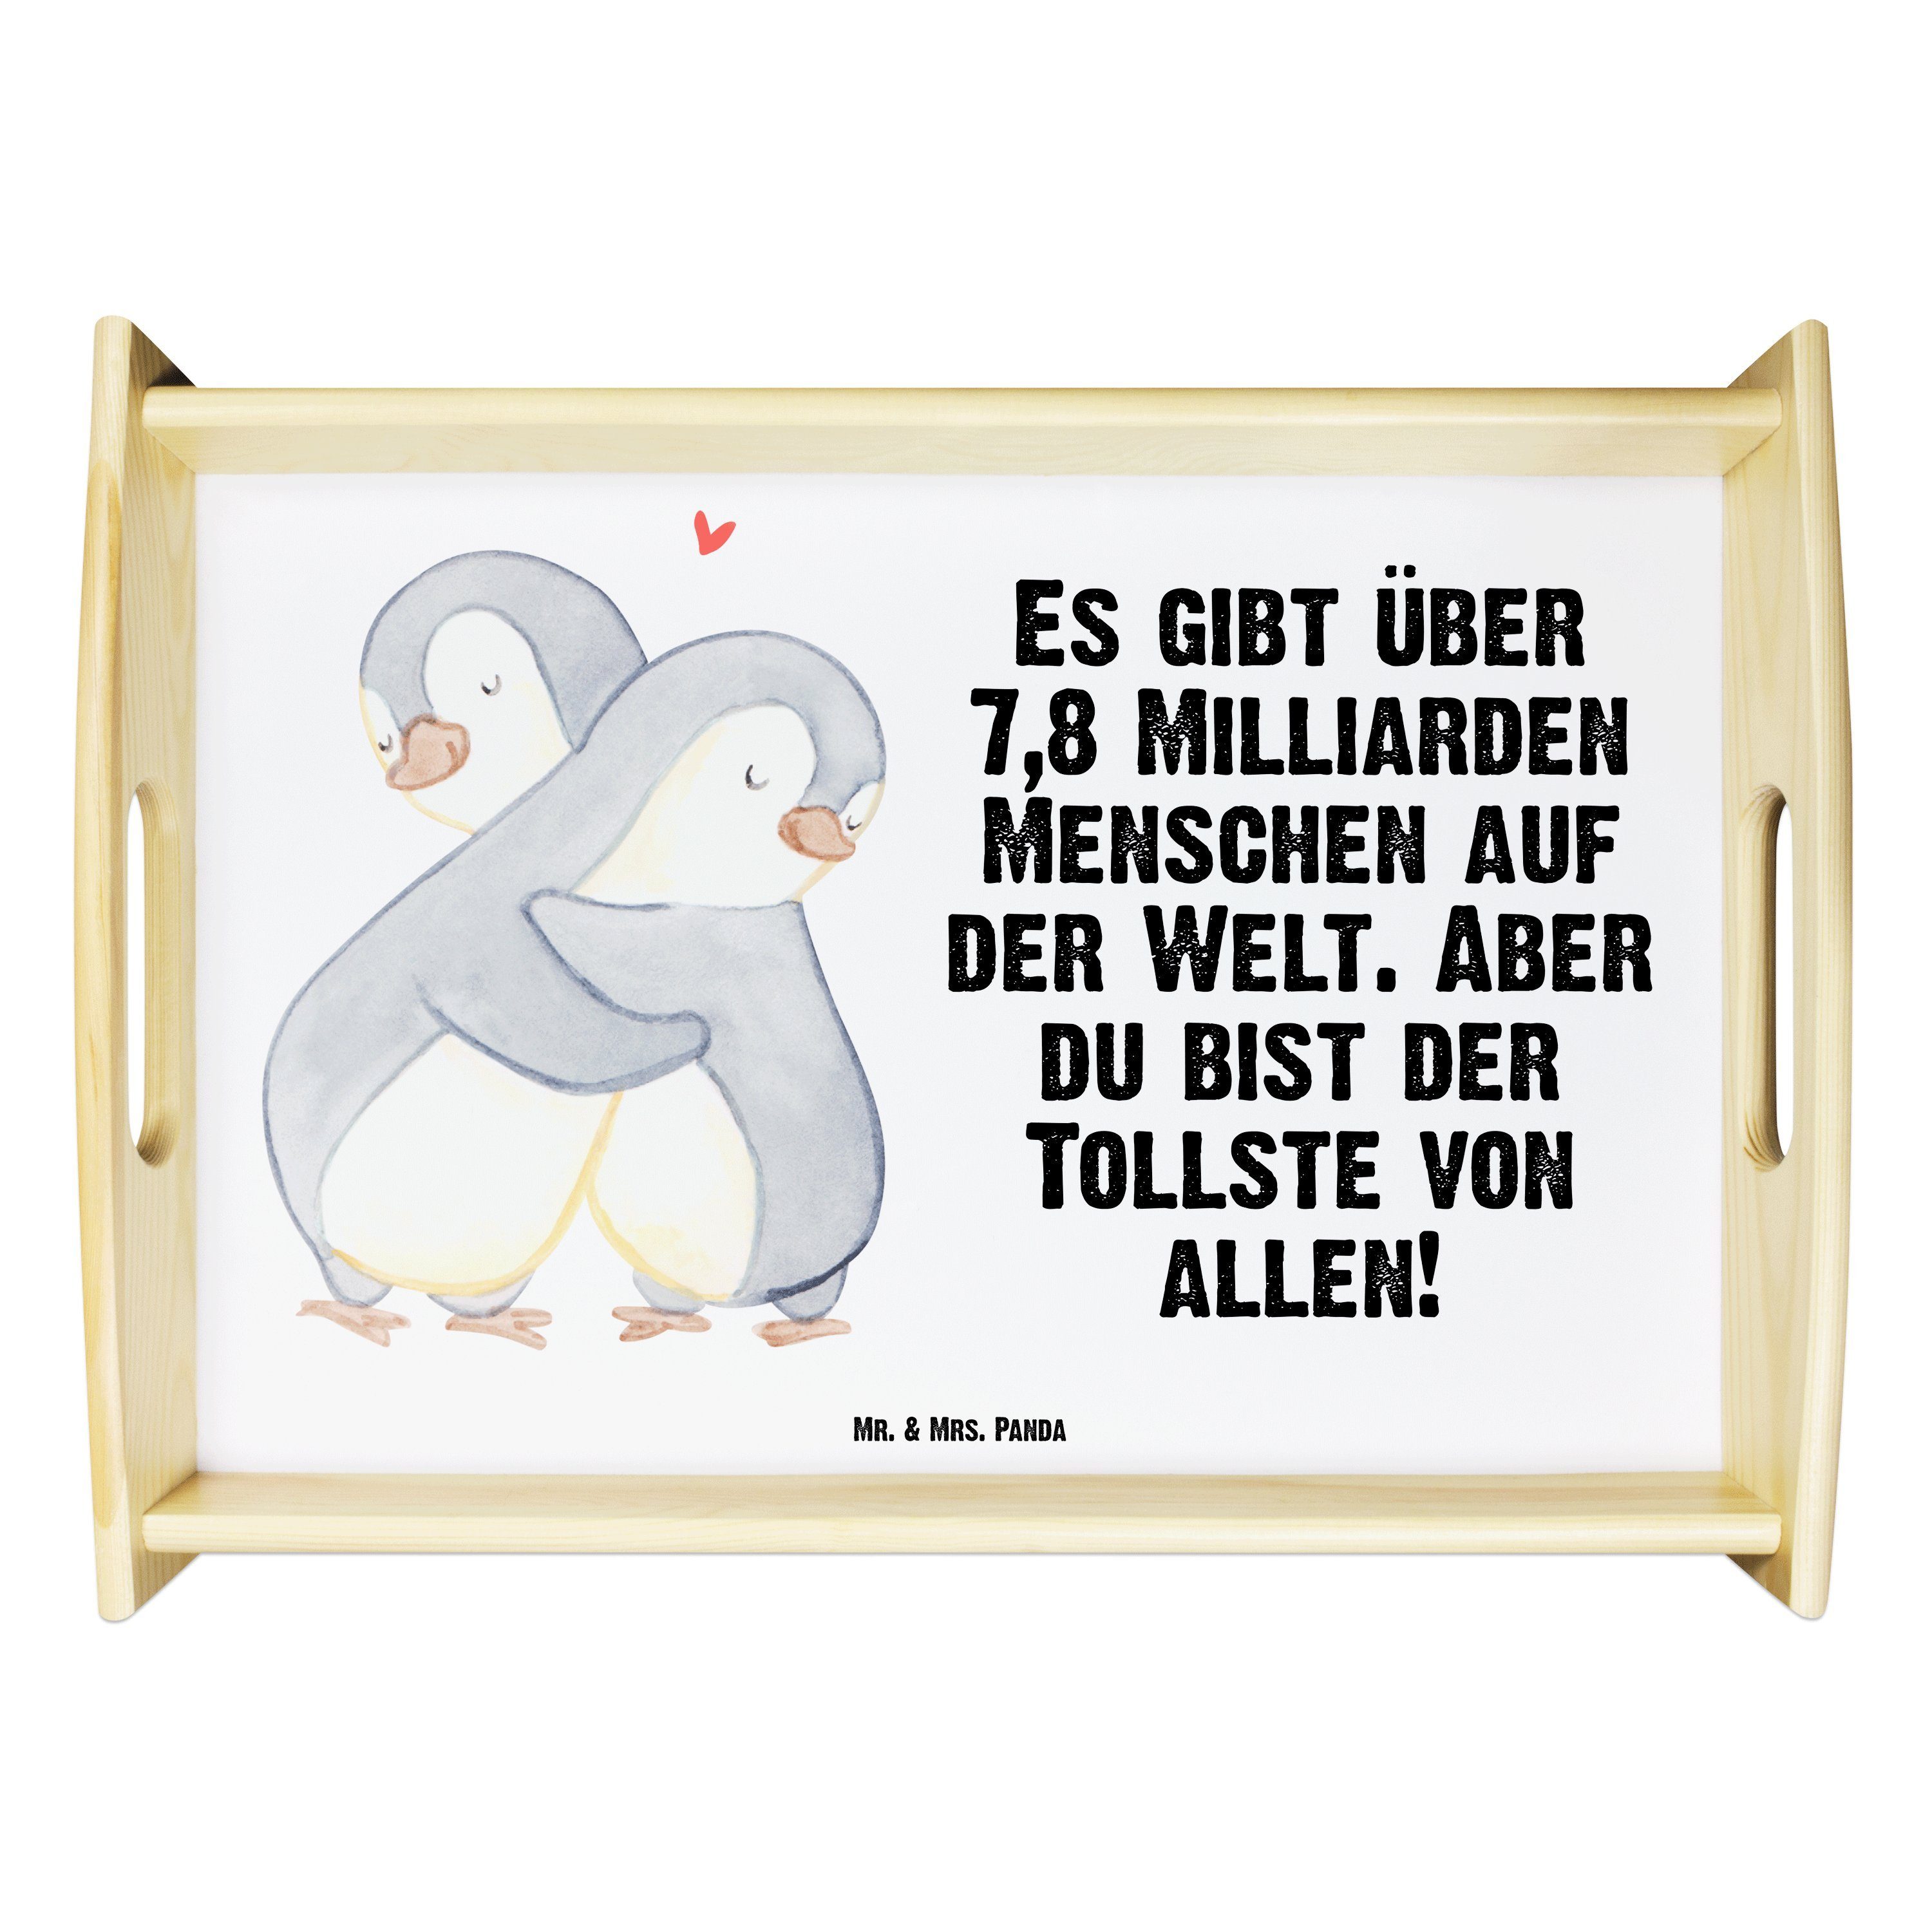 Mr. & Mrs. Panda Tablett Pinguine Kuscheln - Weiß - Geschenk, Hocheitstag, Heiratsantrag, Tabl, Echtholz lasiert, (1-tlg)